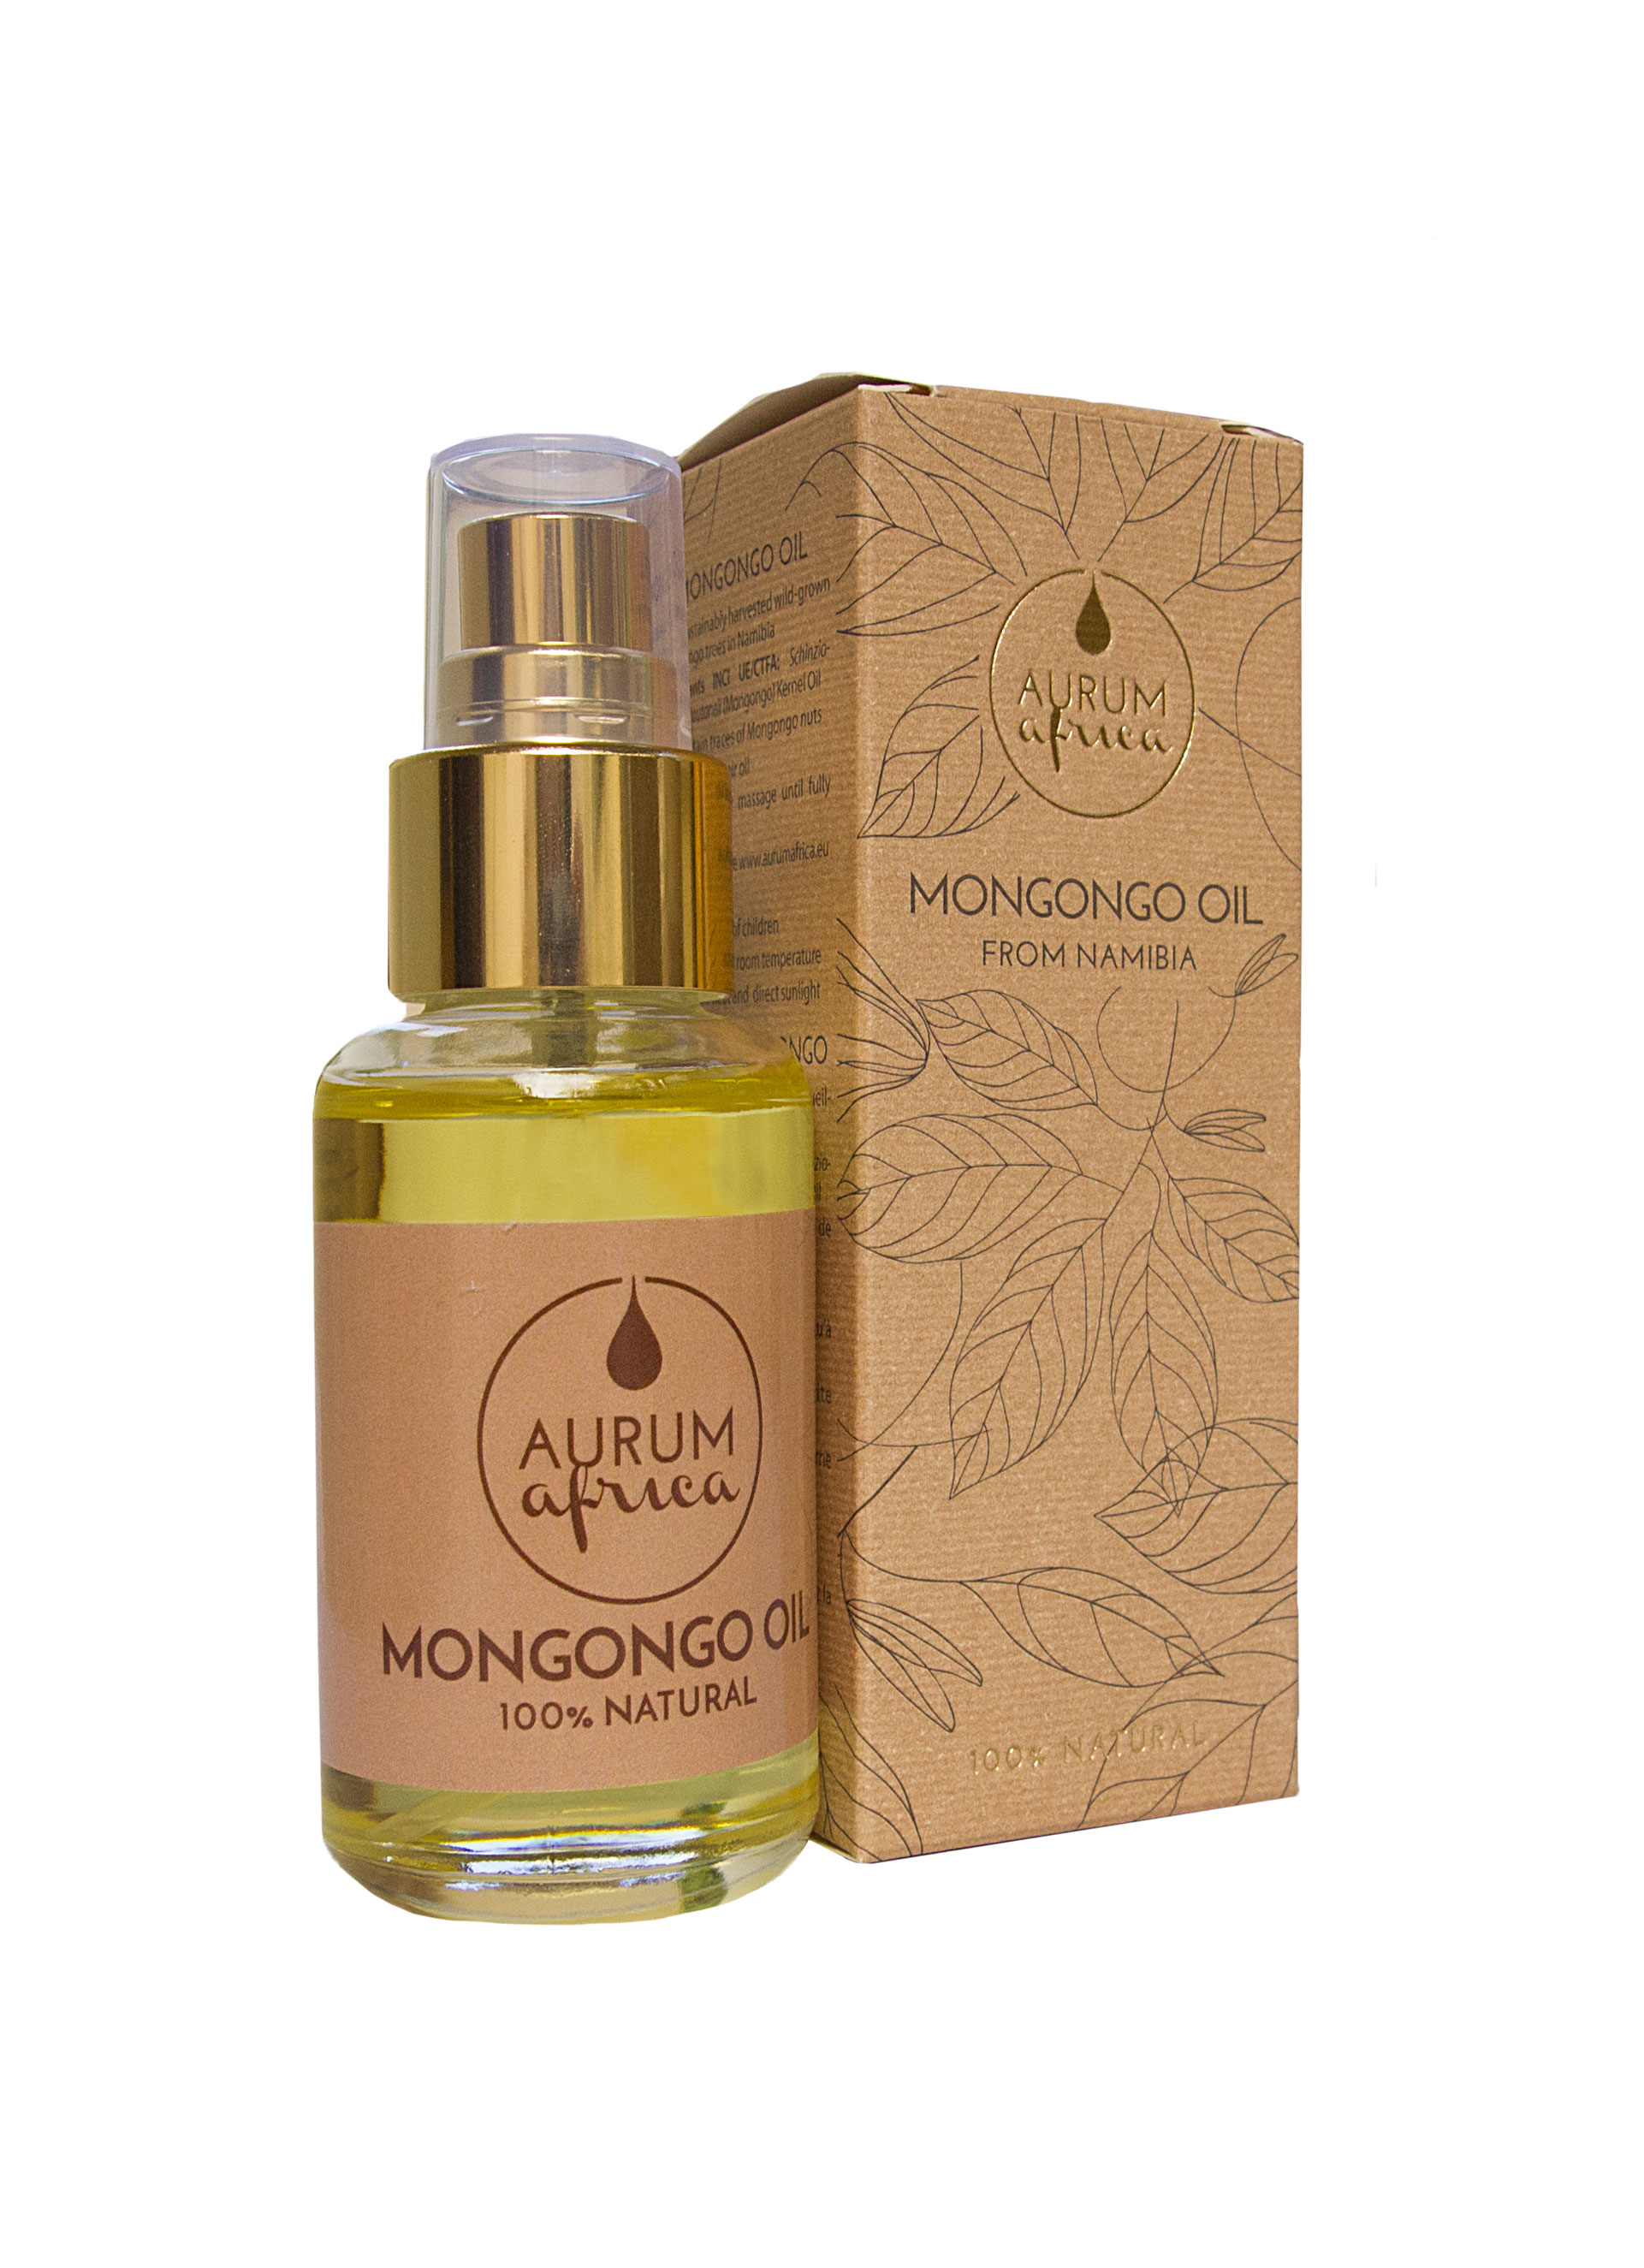 Mongongo-Öl